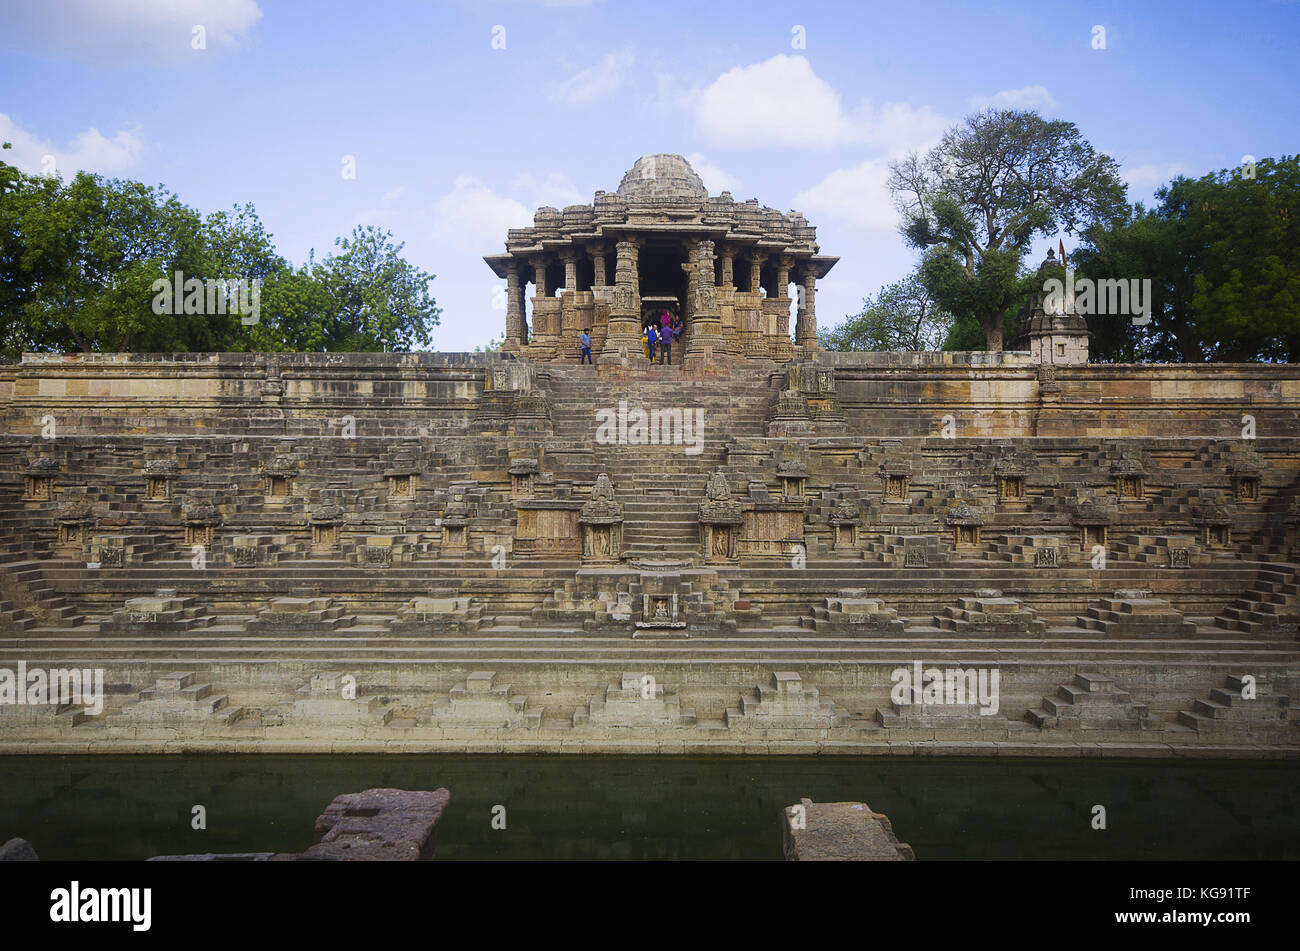 Vue extérieure du temple du soleil sur la rive de la rivière pushpavati. Construit en 1026 - 27 annonce pendant le règne de bhima i de la dynastie des chaulukya modhera. Banque D'Images